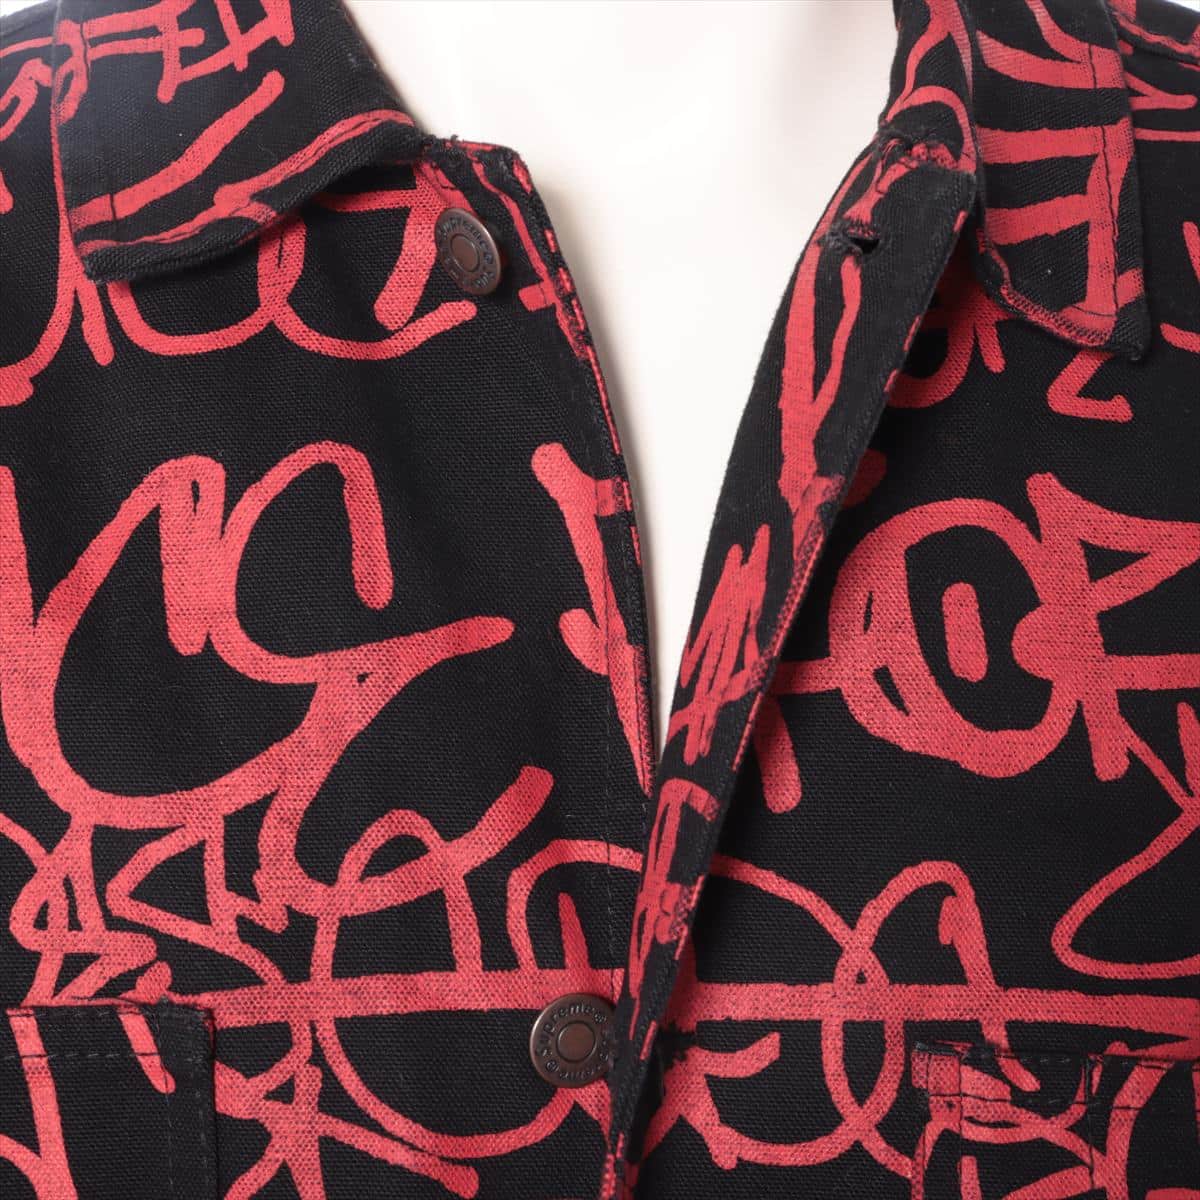 Supreme x Comme des Garcons Shirt 18AW Cotton Denim jacket M Men's Red x Black  Printed Canvas Chore Coat